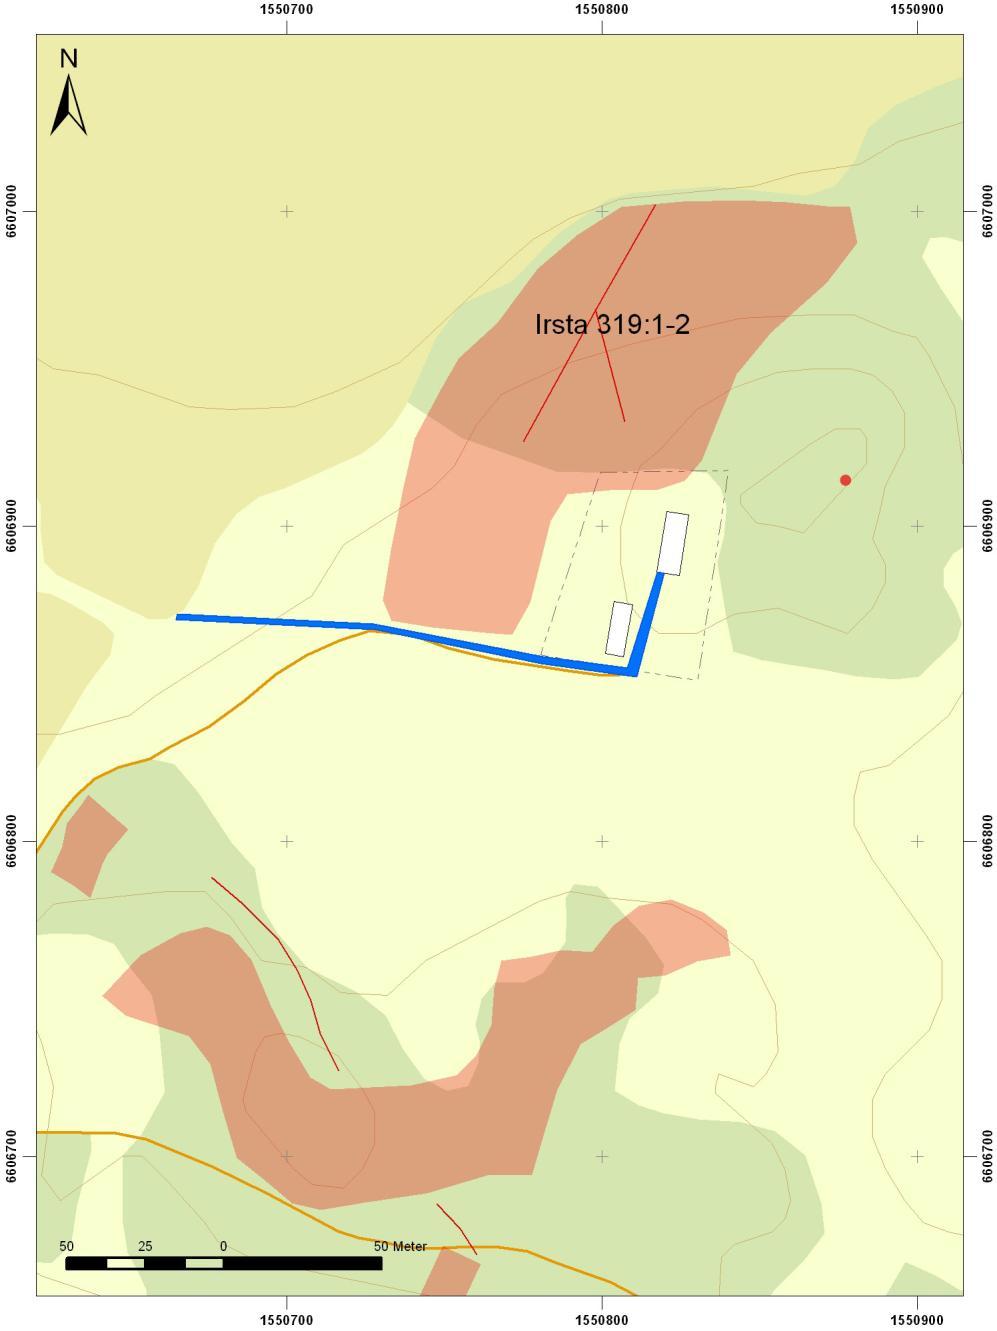 Figur 2. Schaktet vid Berga markerat med blå linje.